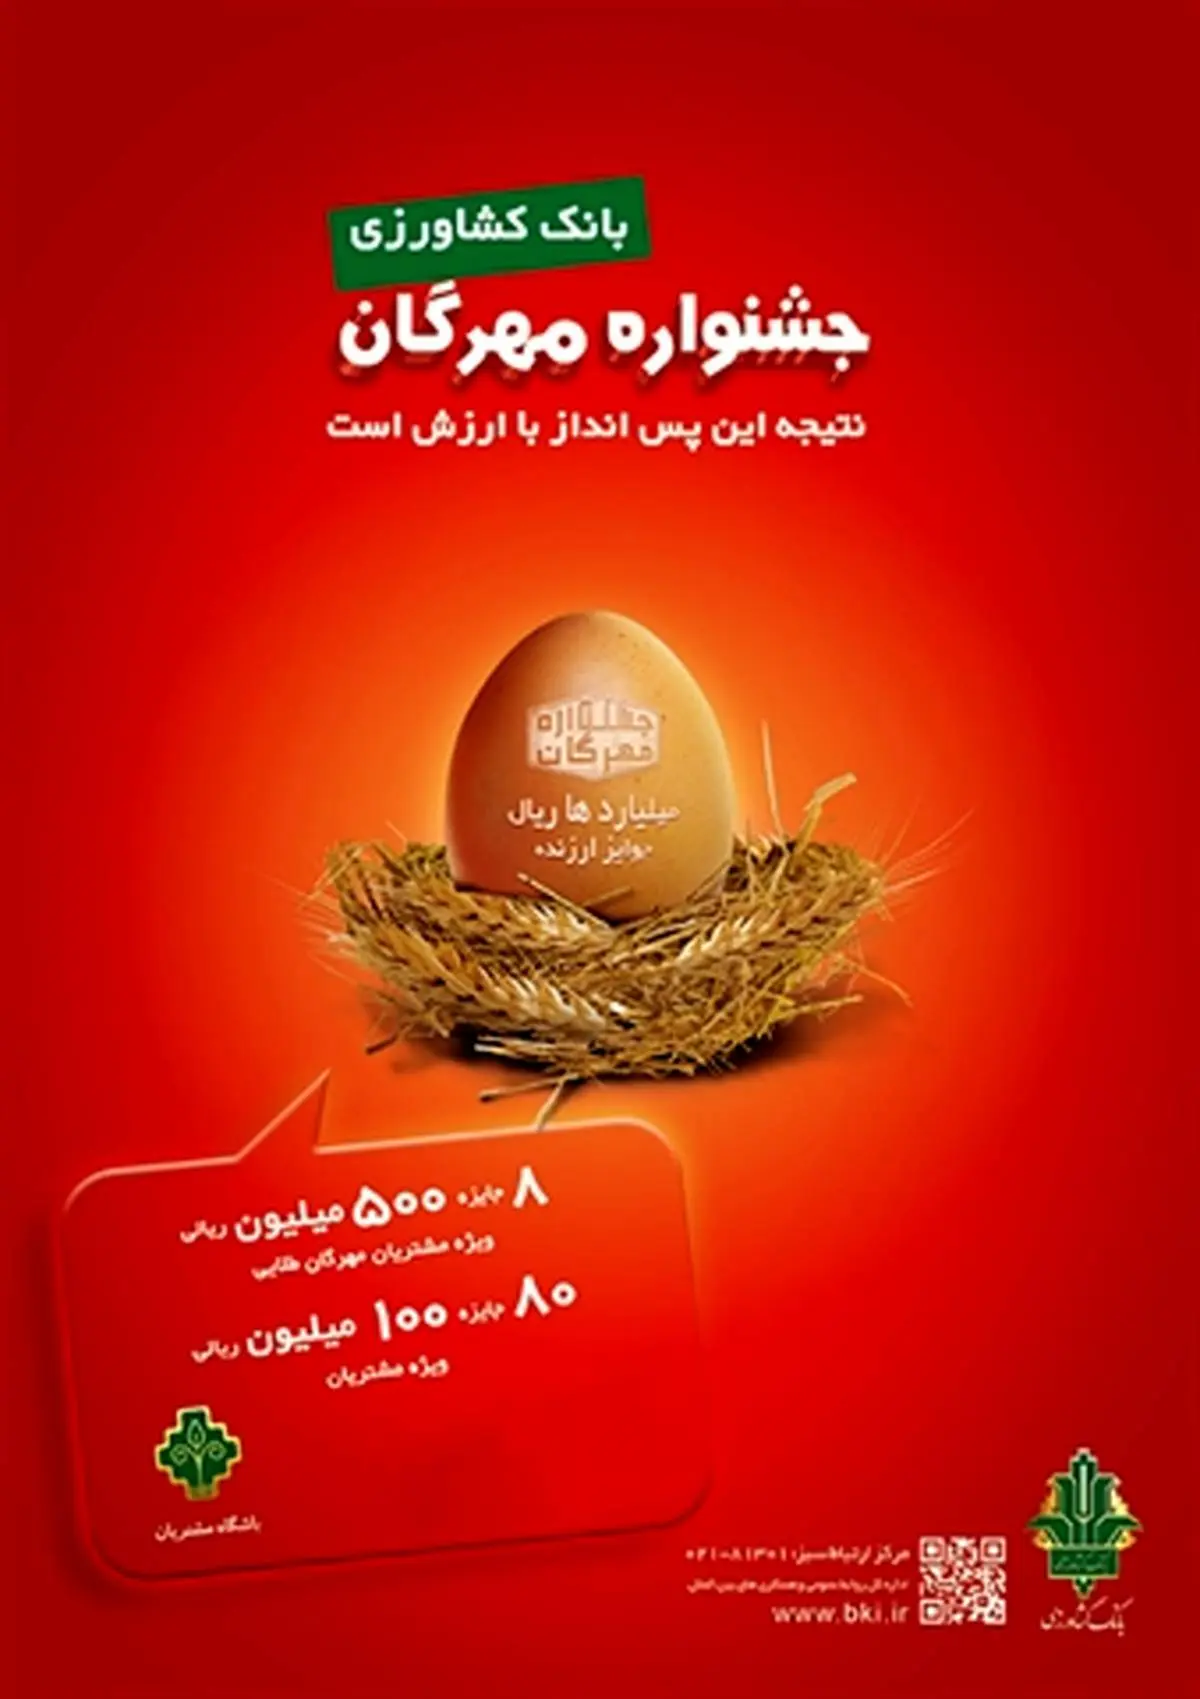 اعلام اسامی برندگان قرعه کشی جشنواره مهرگان بانک کشاورزی

